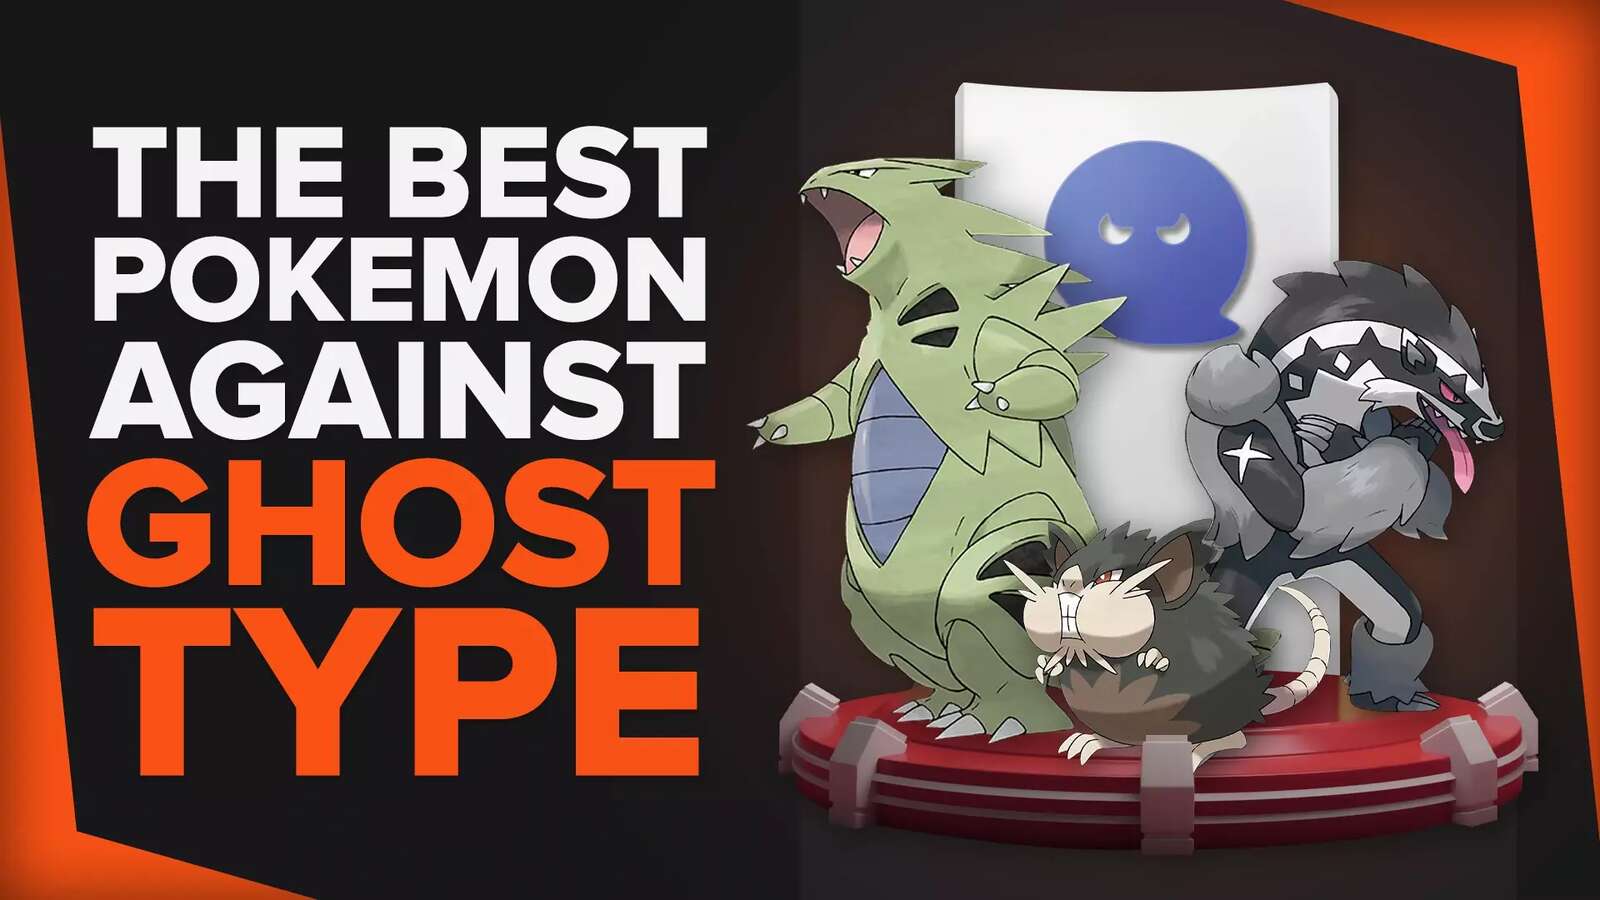 10 Pokemon Best Against Ghost Type Pokemon [Ranked]